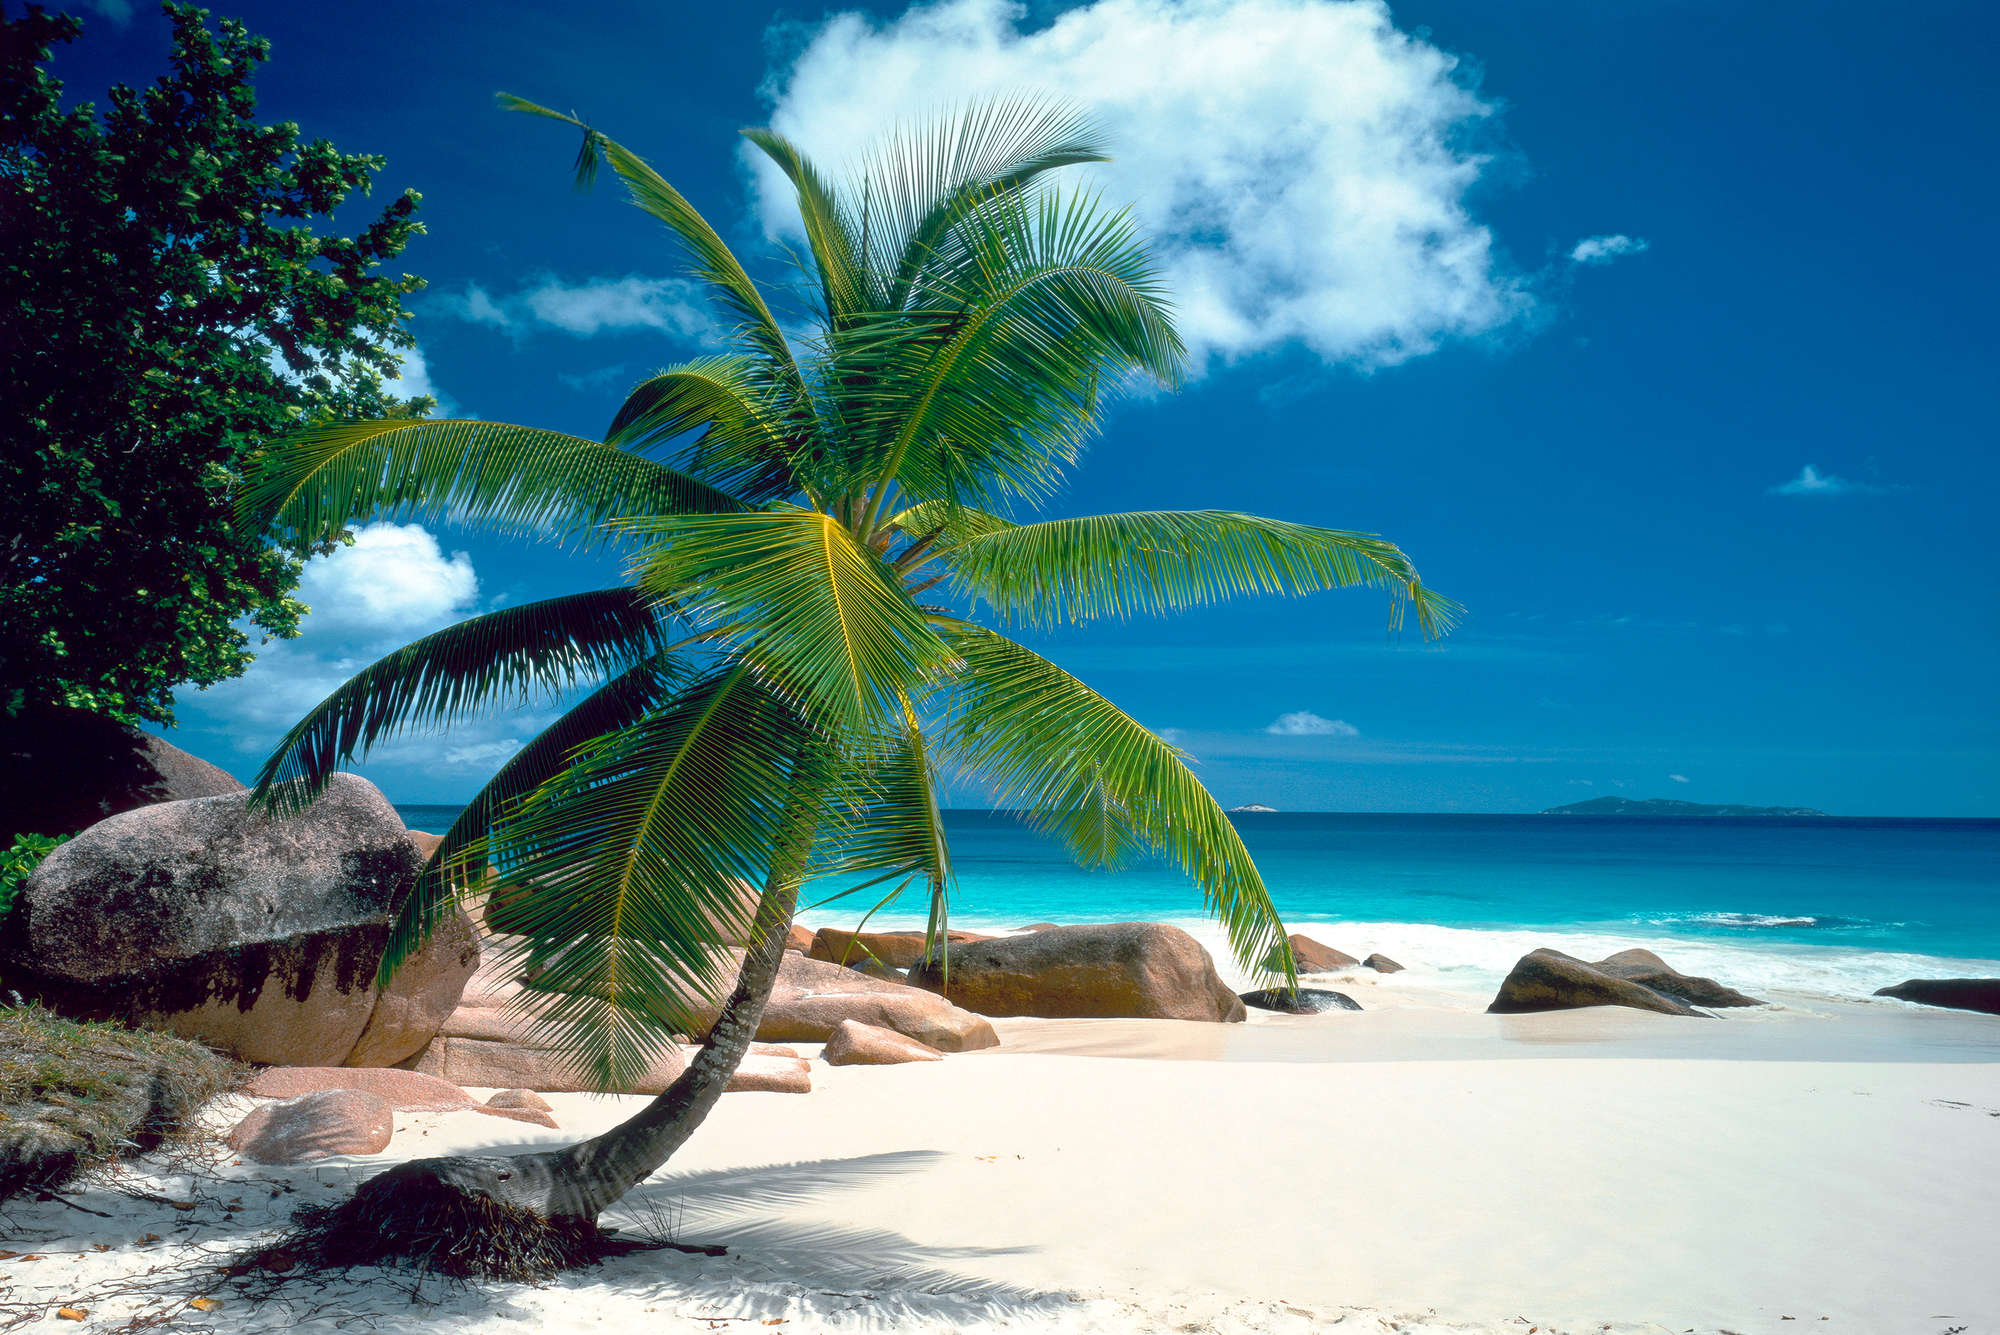             Strand Behang Palmboom met Blauwe Zee op Premium Smooth Fleece
        